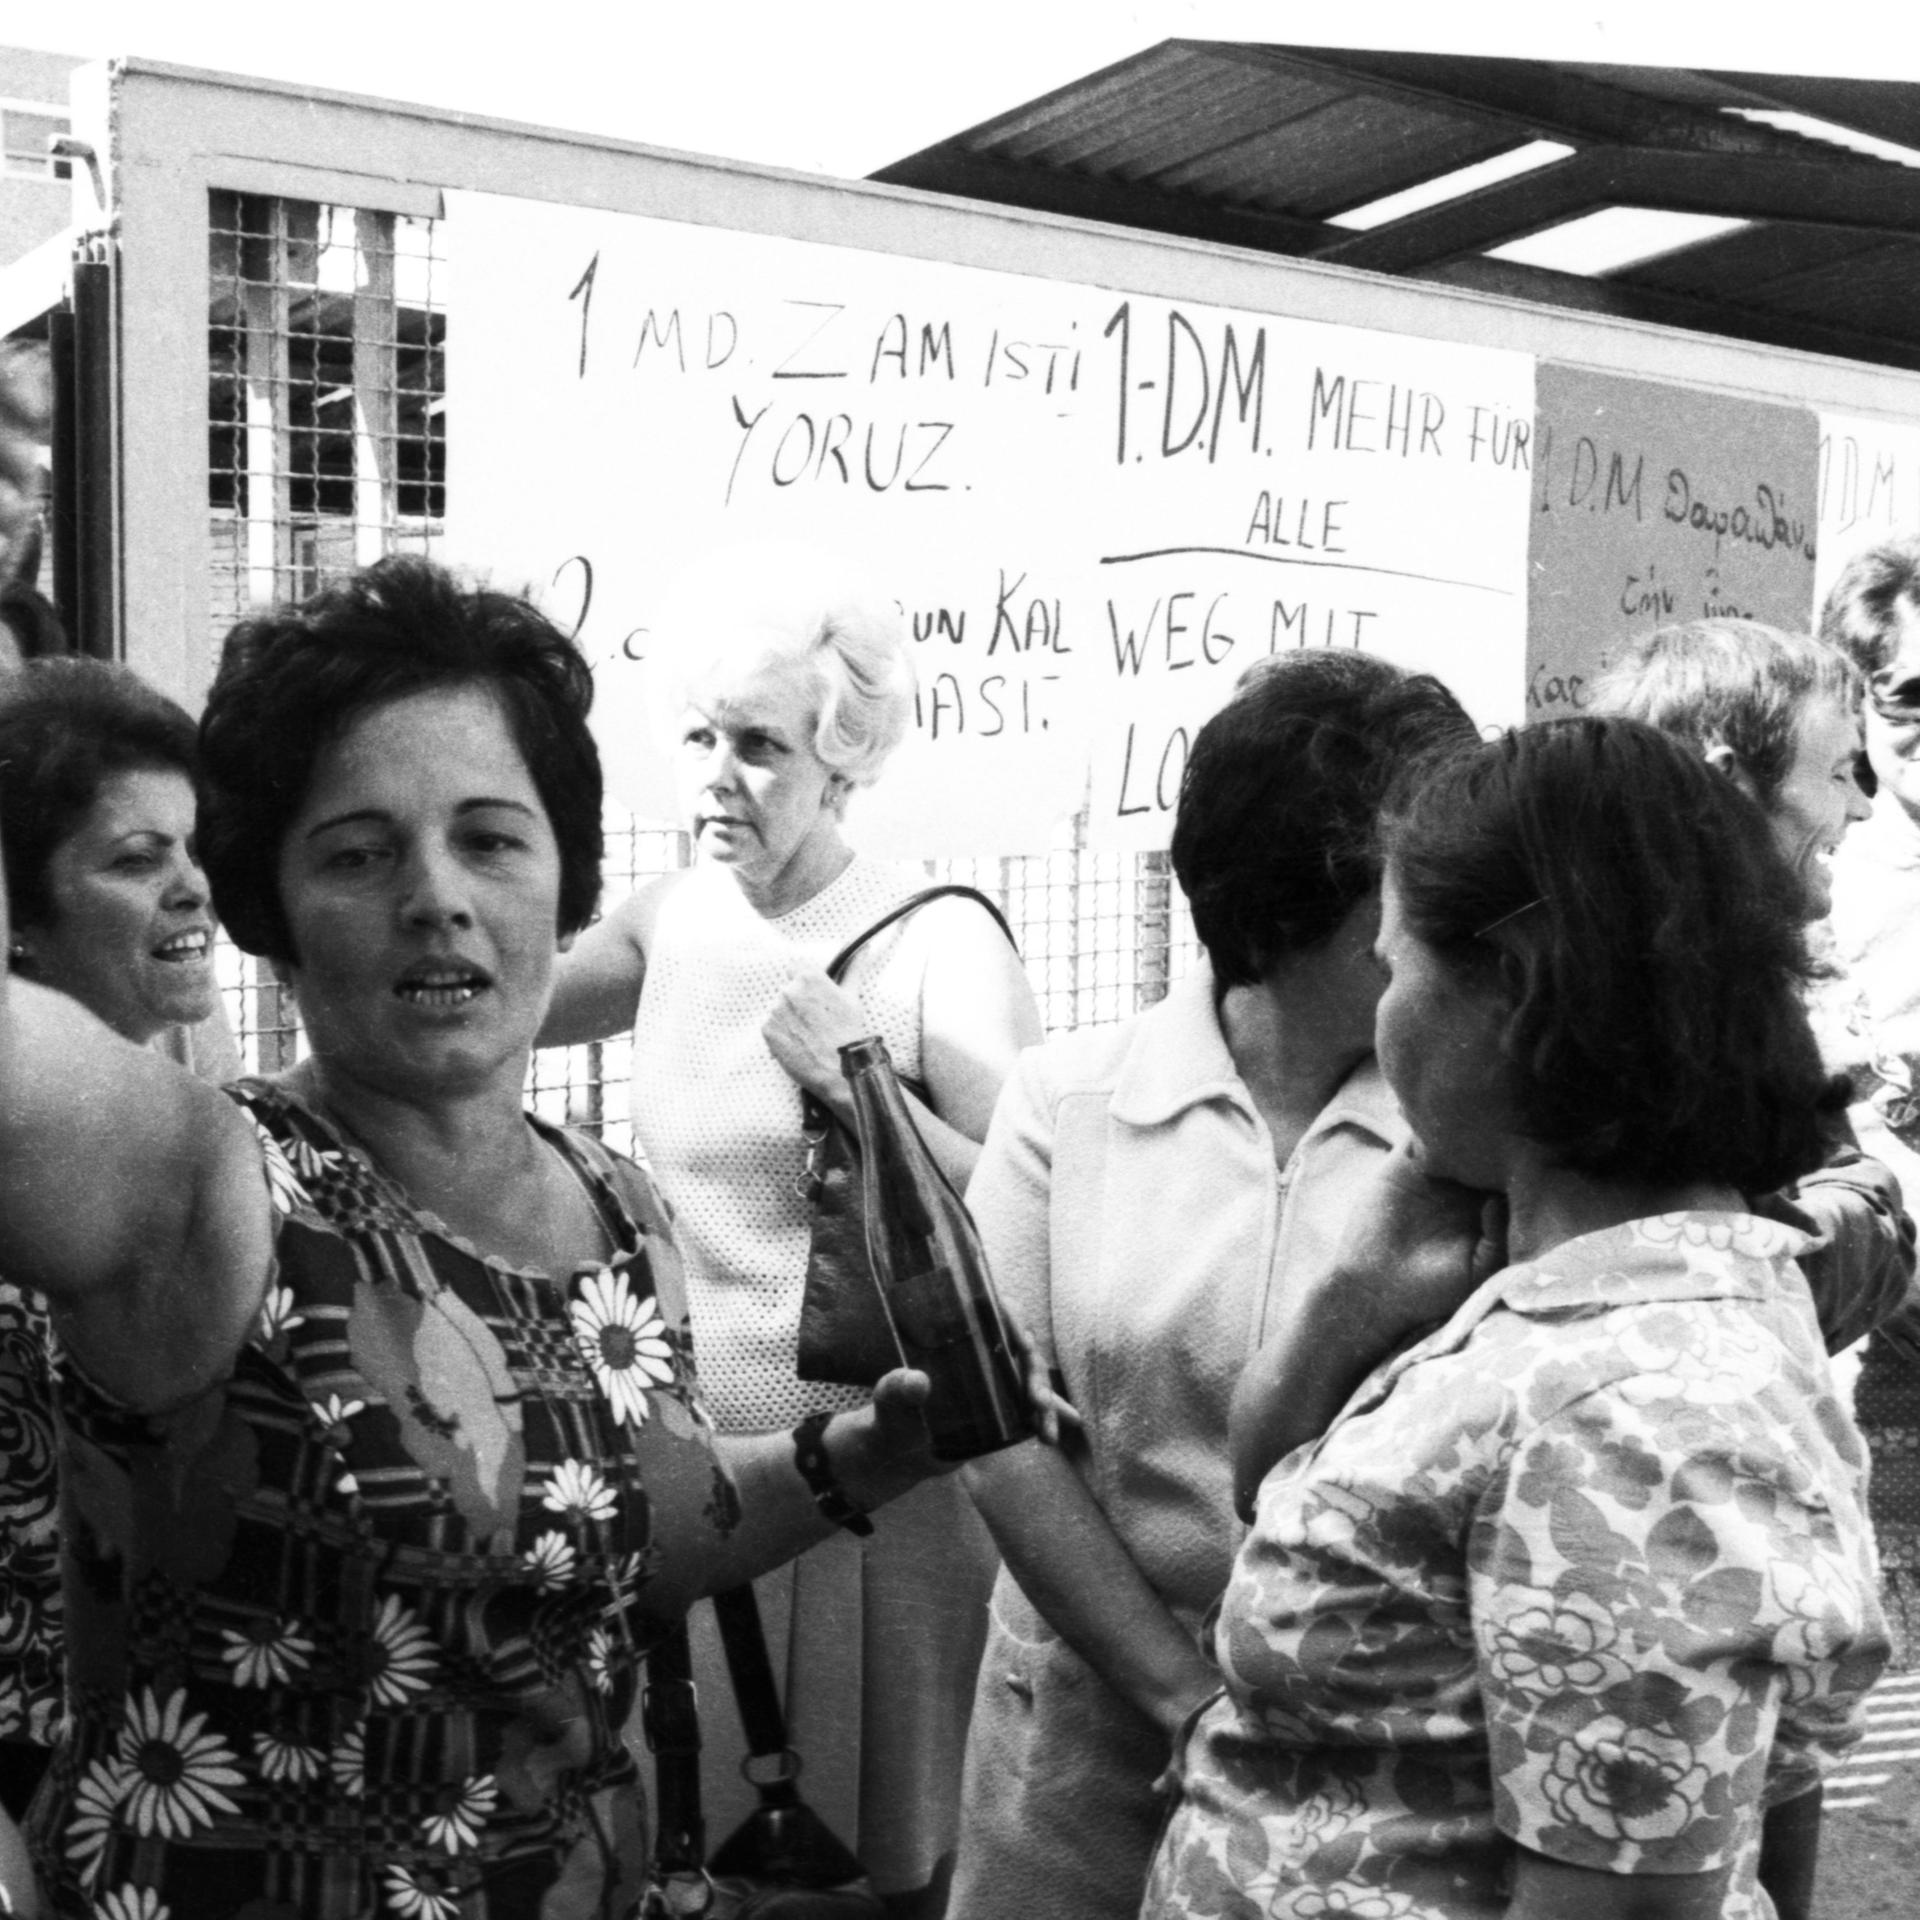 Eine Gruppe von Frauen steht vor einer Tafel auf der etwas aufgeschrieben ist. Das Bild wirkt als wäre es im Streikgetümmel entstanden.